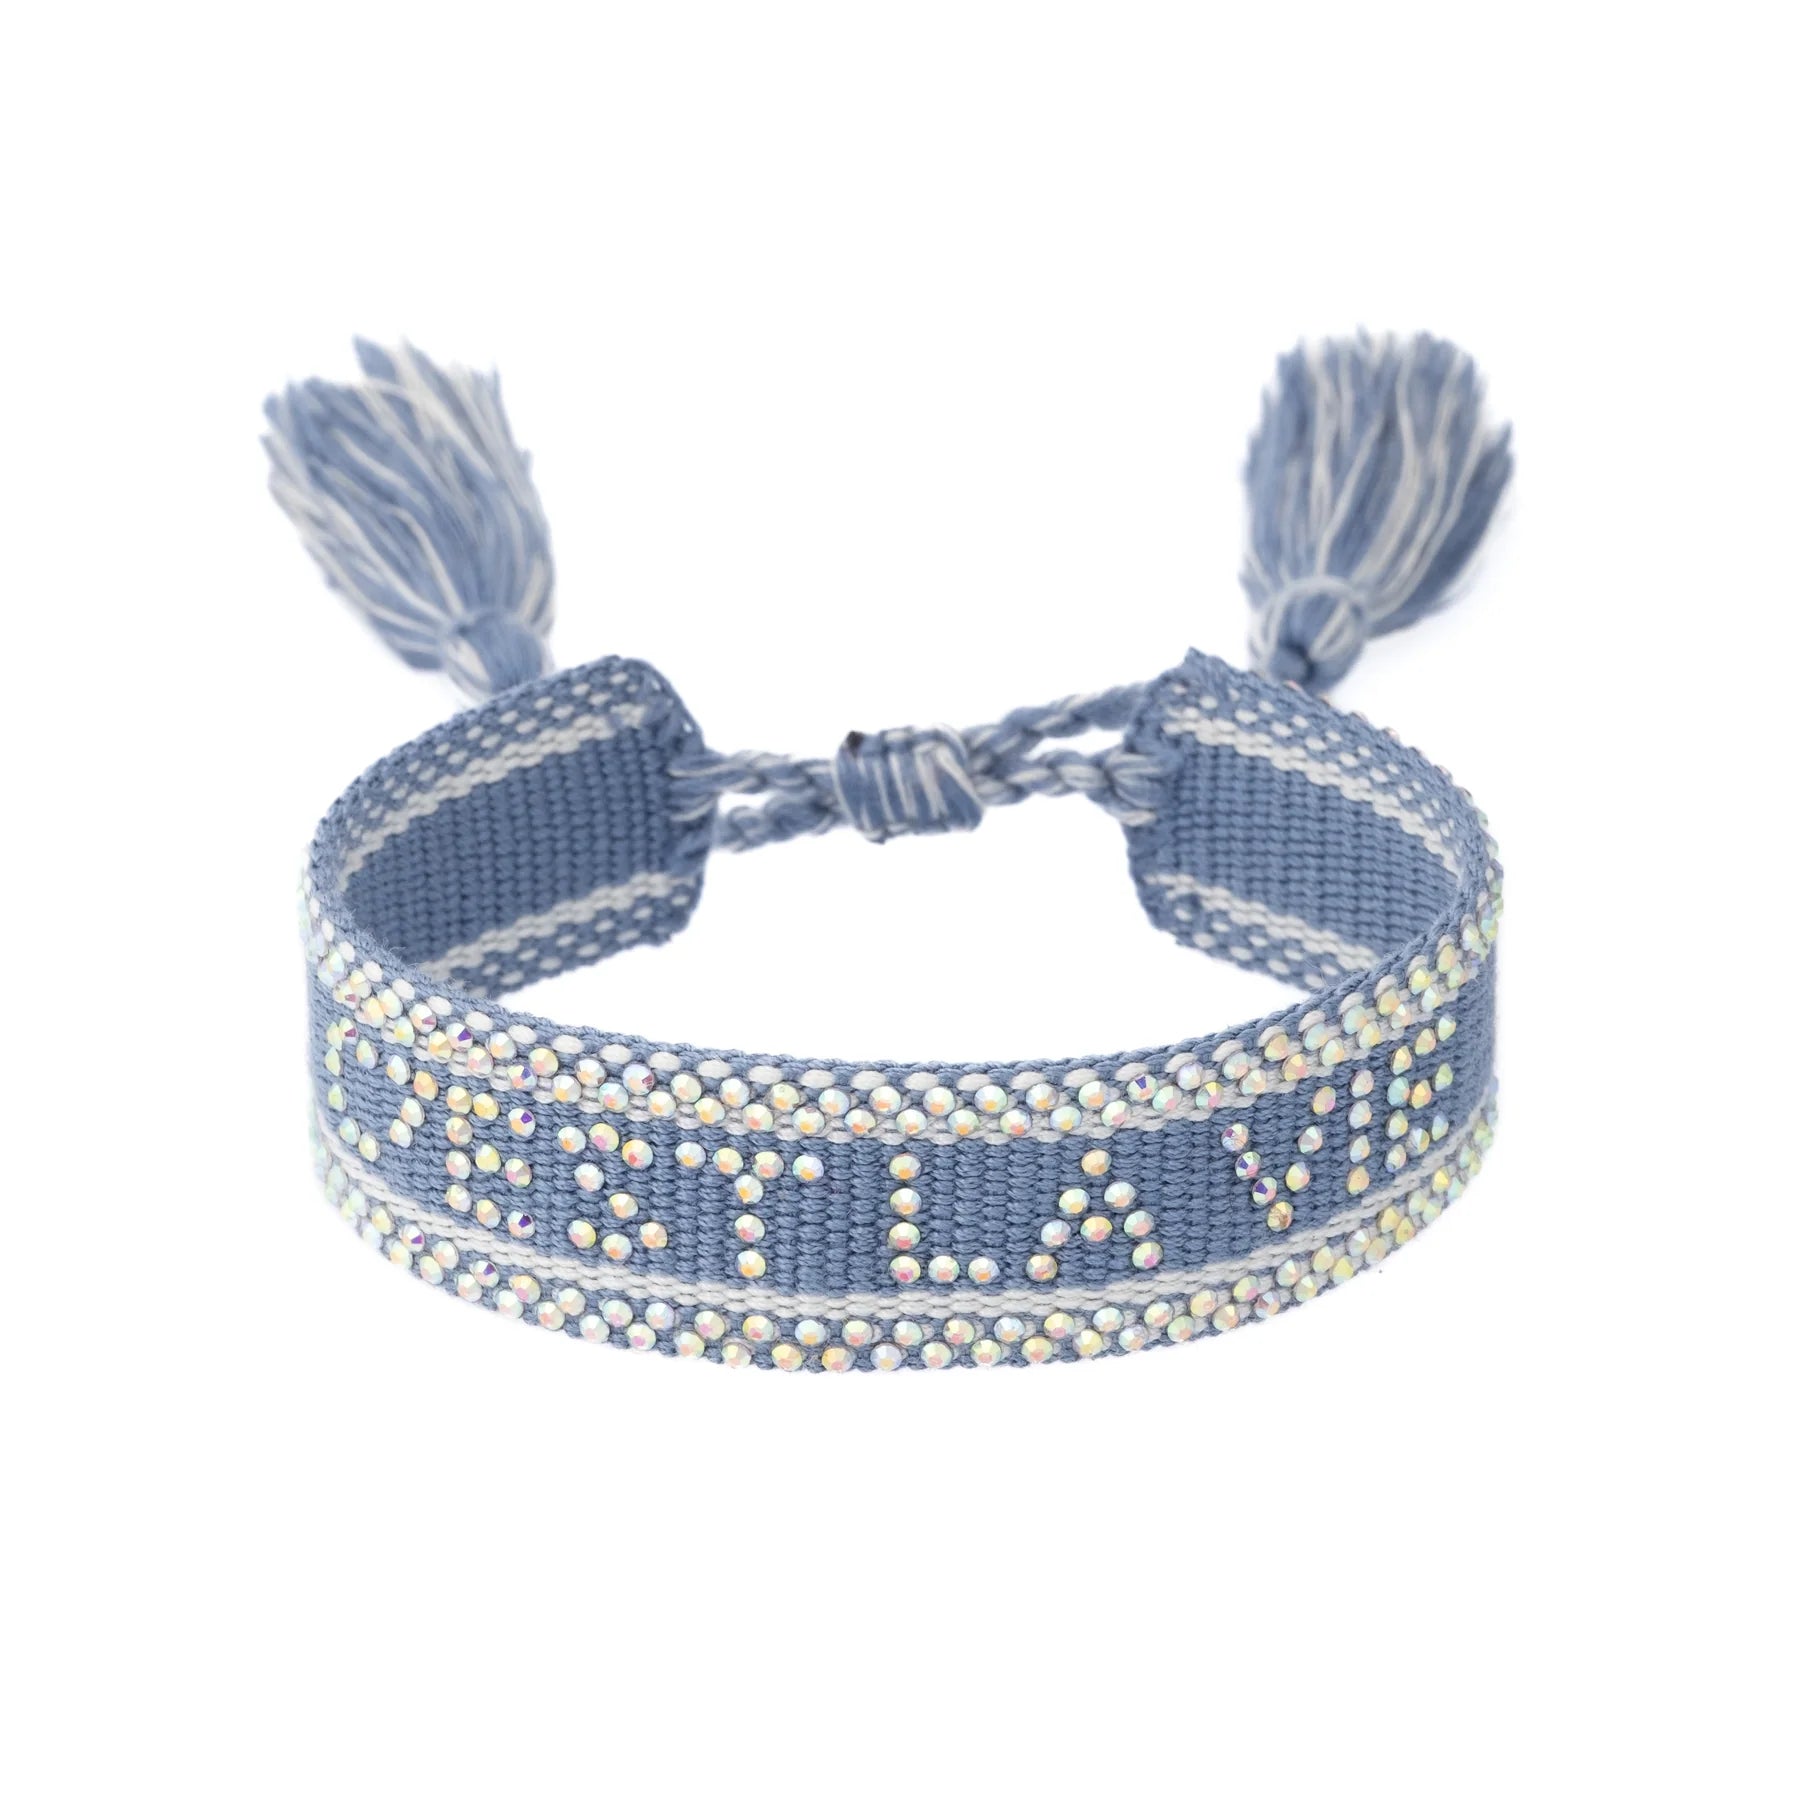 Woven Bracelet w/ Crystals "C'est La Vie" Light Blue